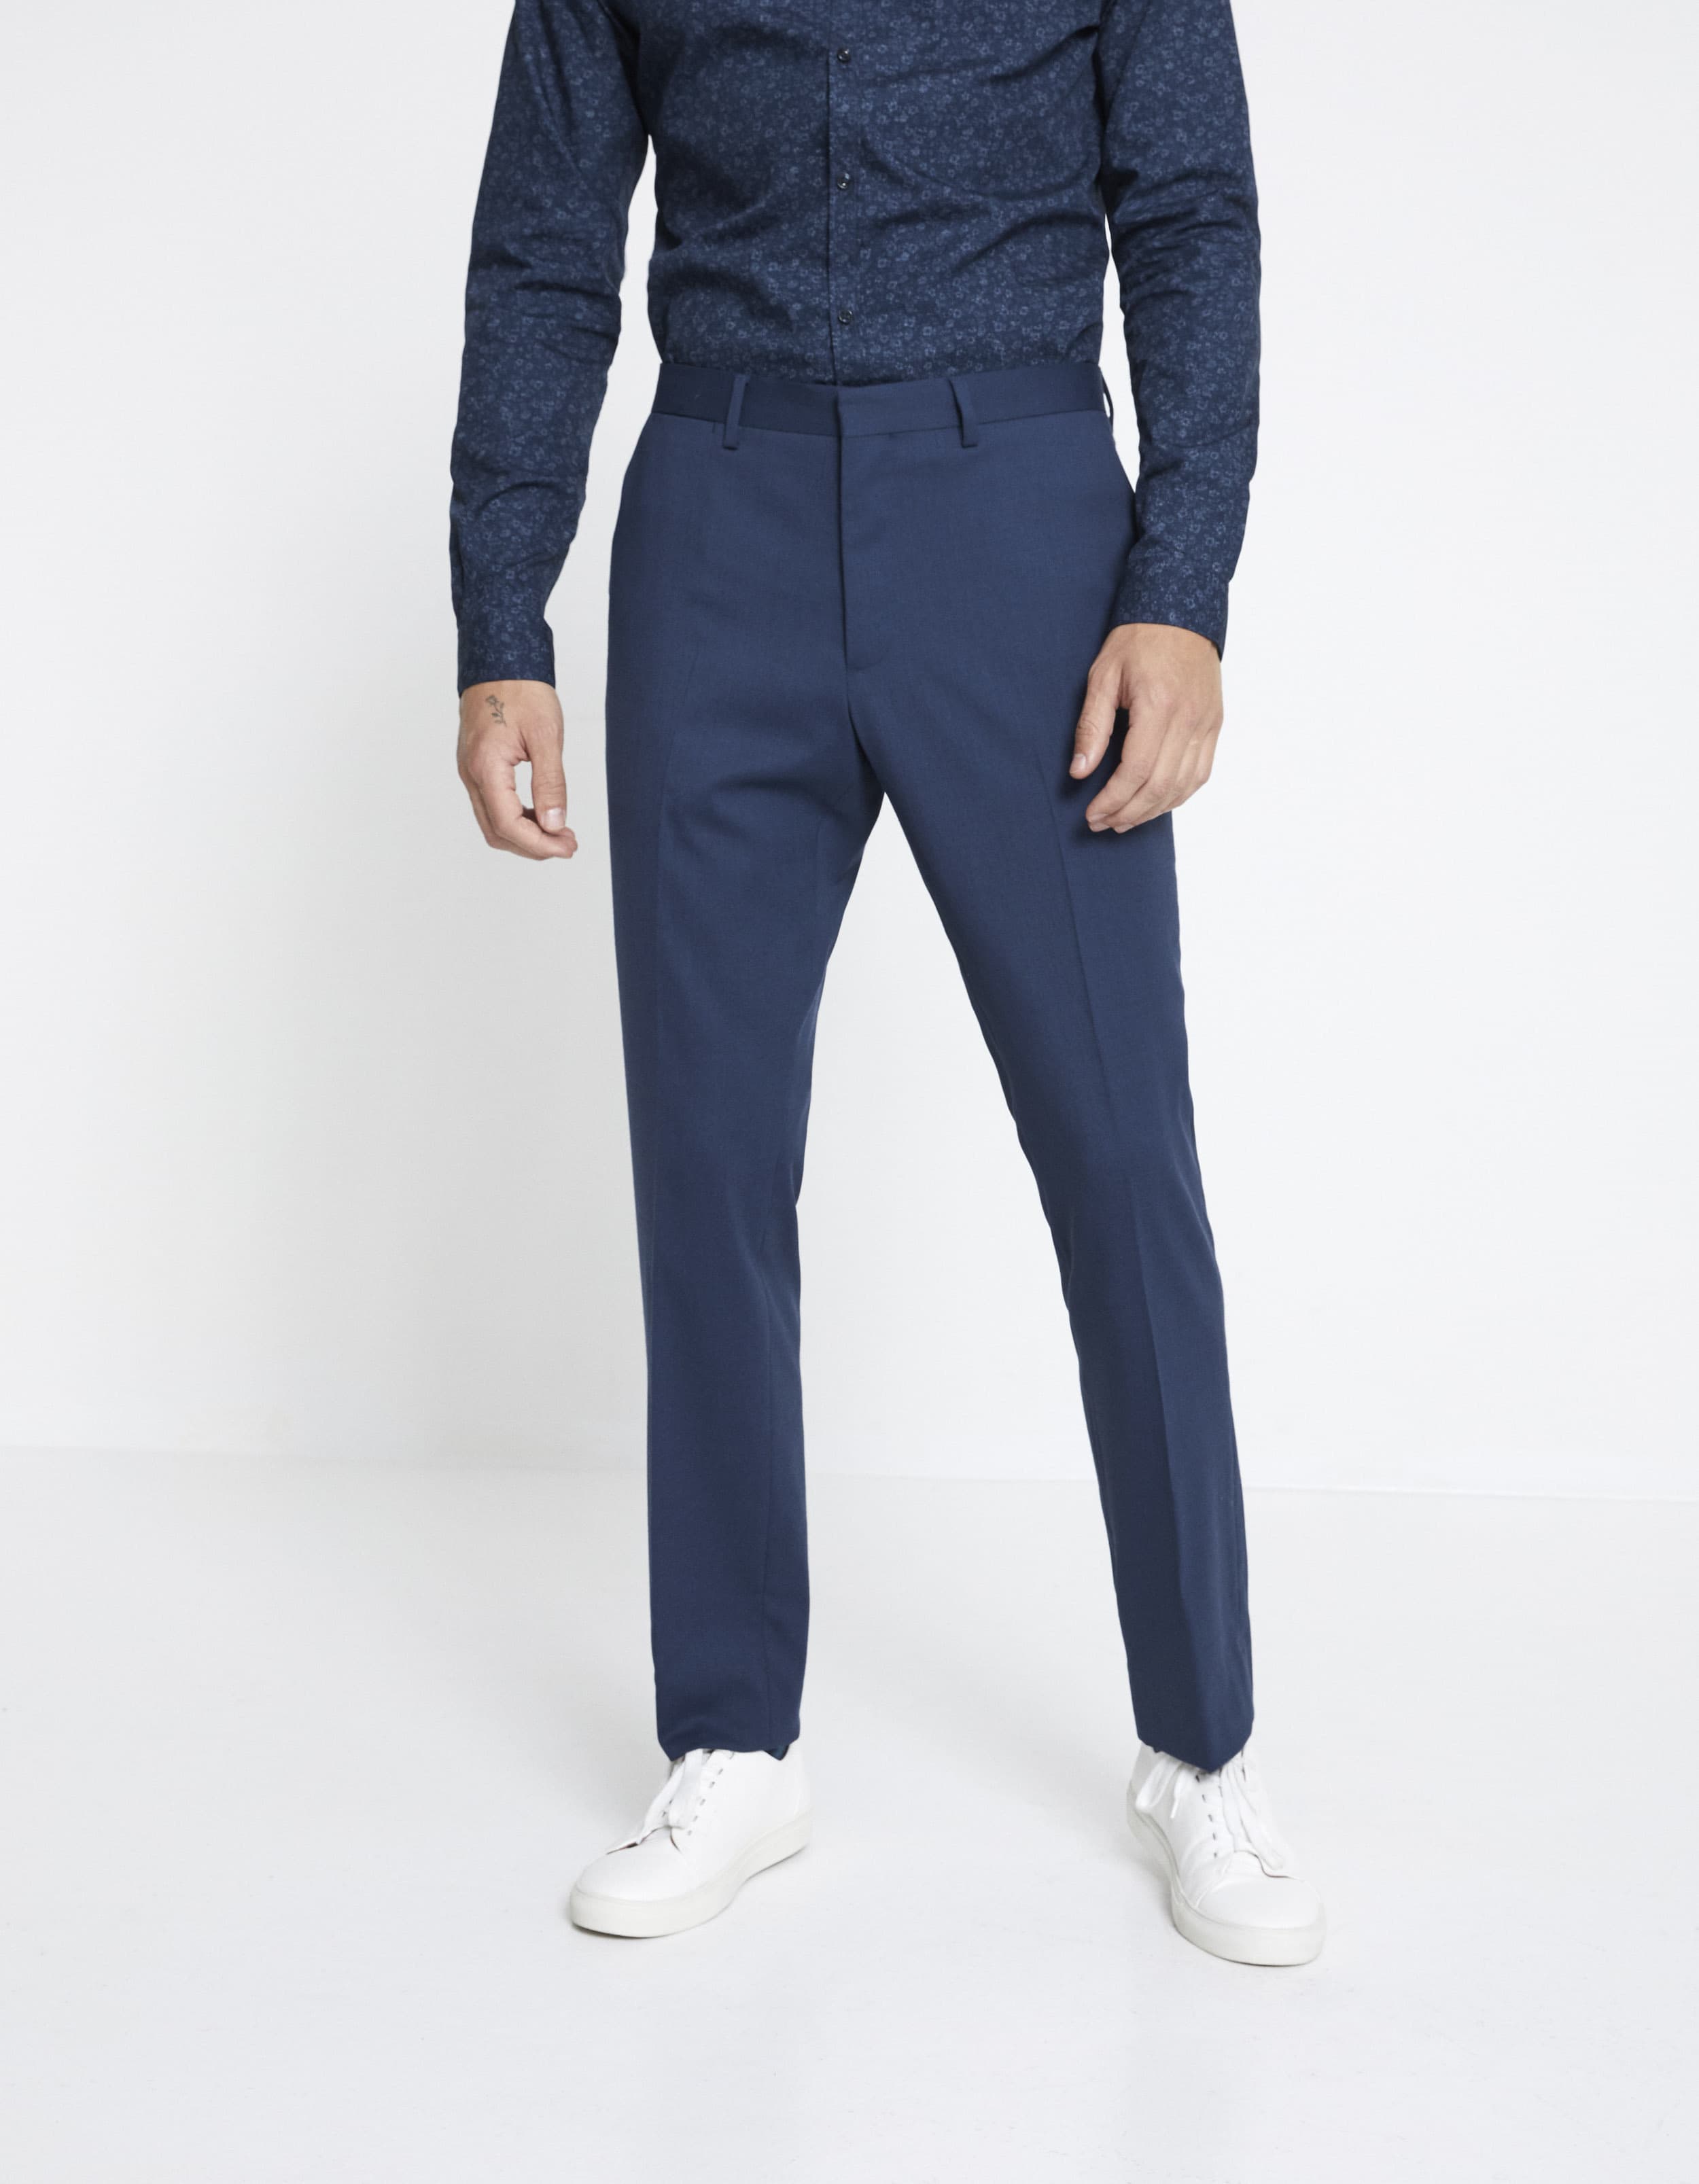 Pantalon NEY slim extensible laine mélangée uni – bleu Prix 59,99 €